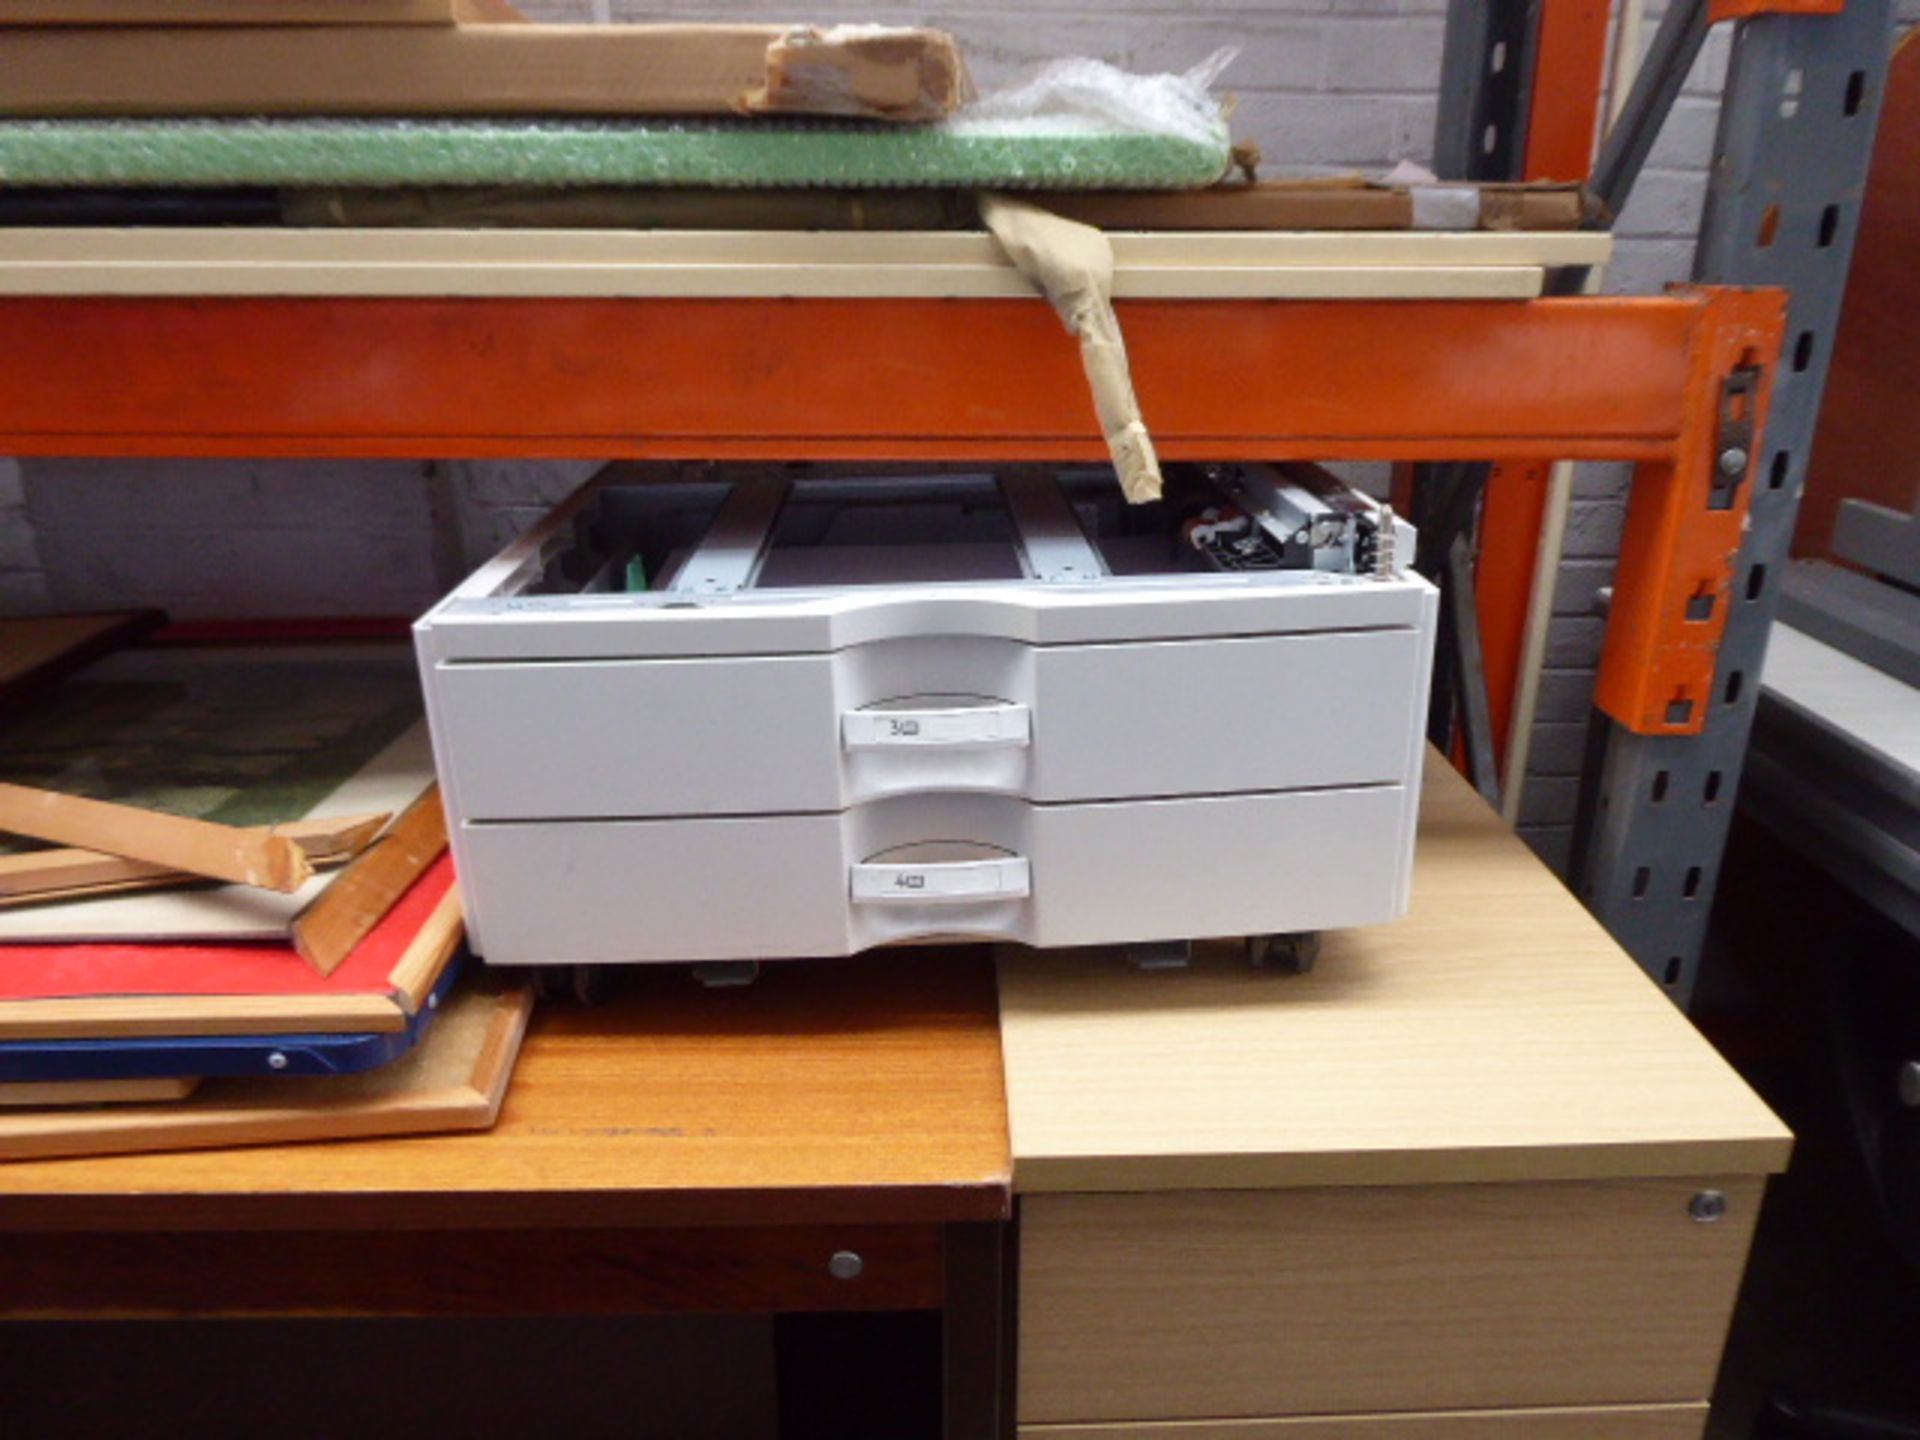 A Ricoh copier - Image 4 of 4